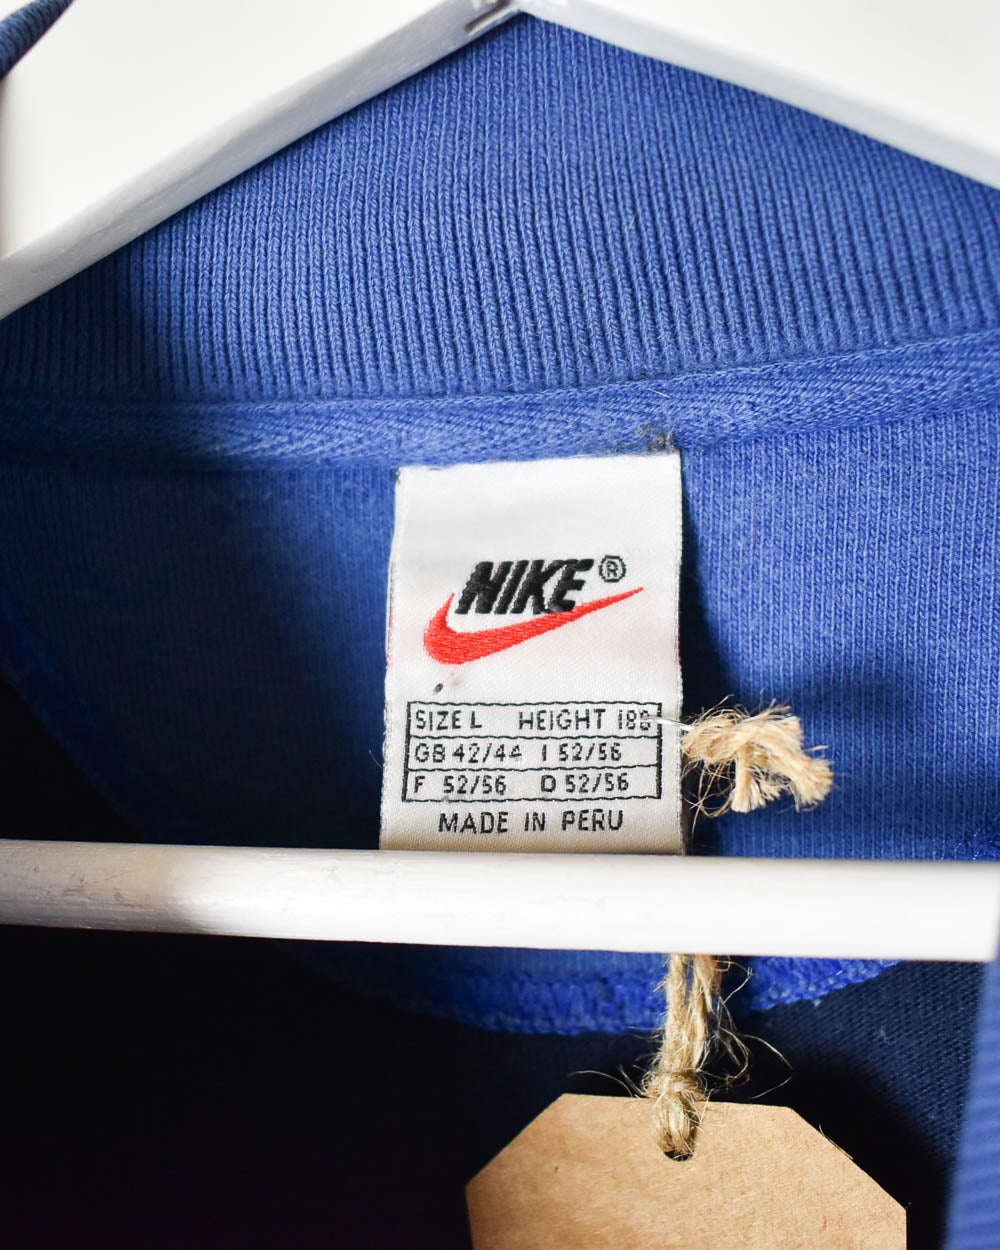 Navy Nike Collared Sweatshirt - Large